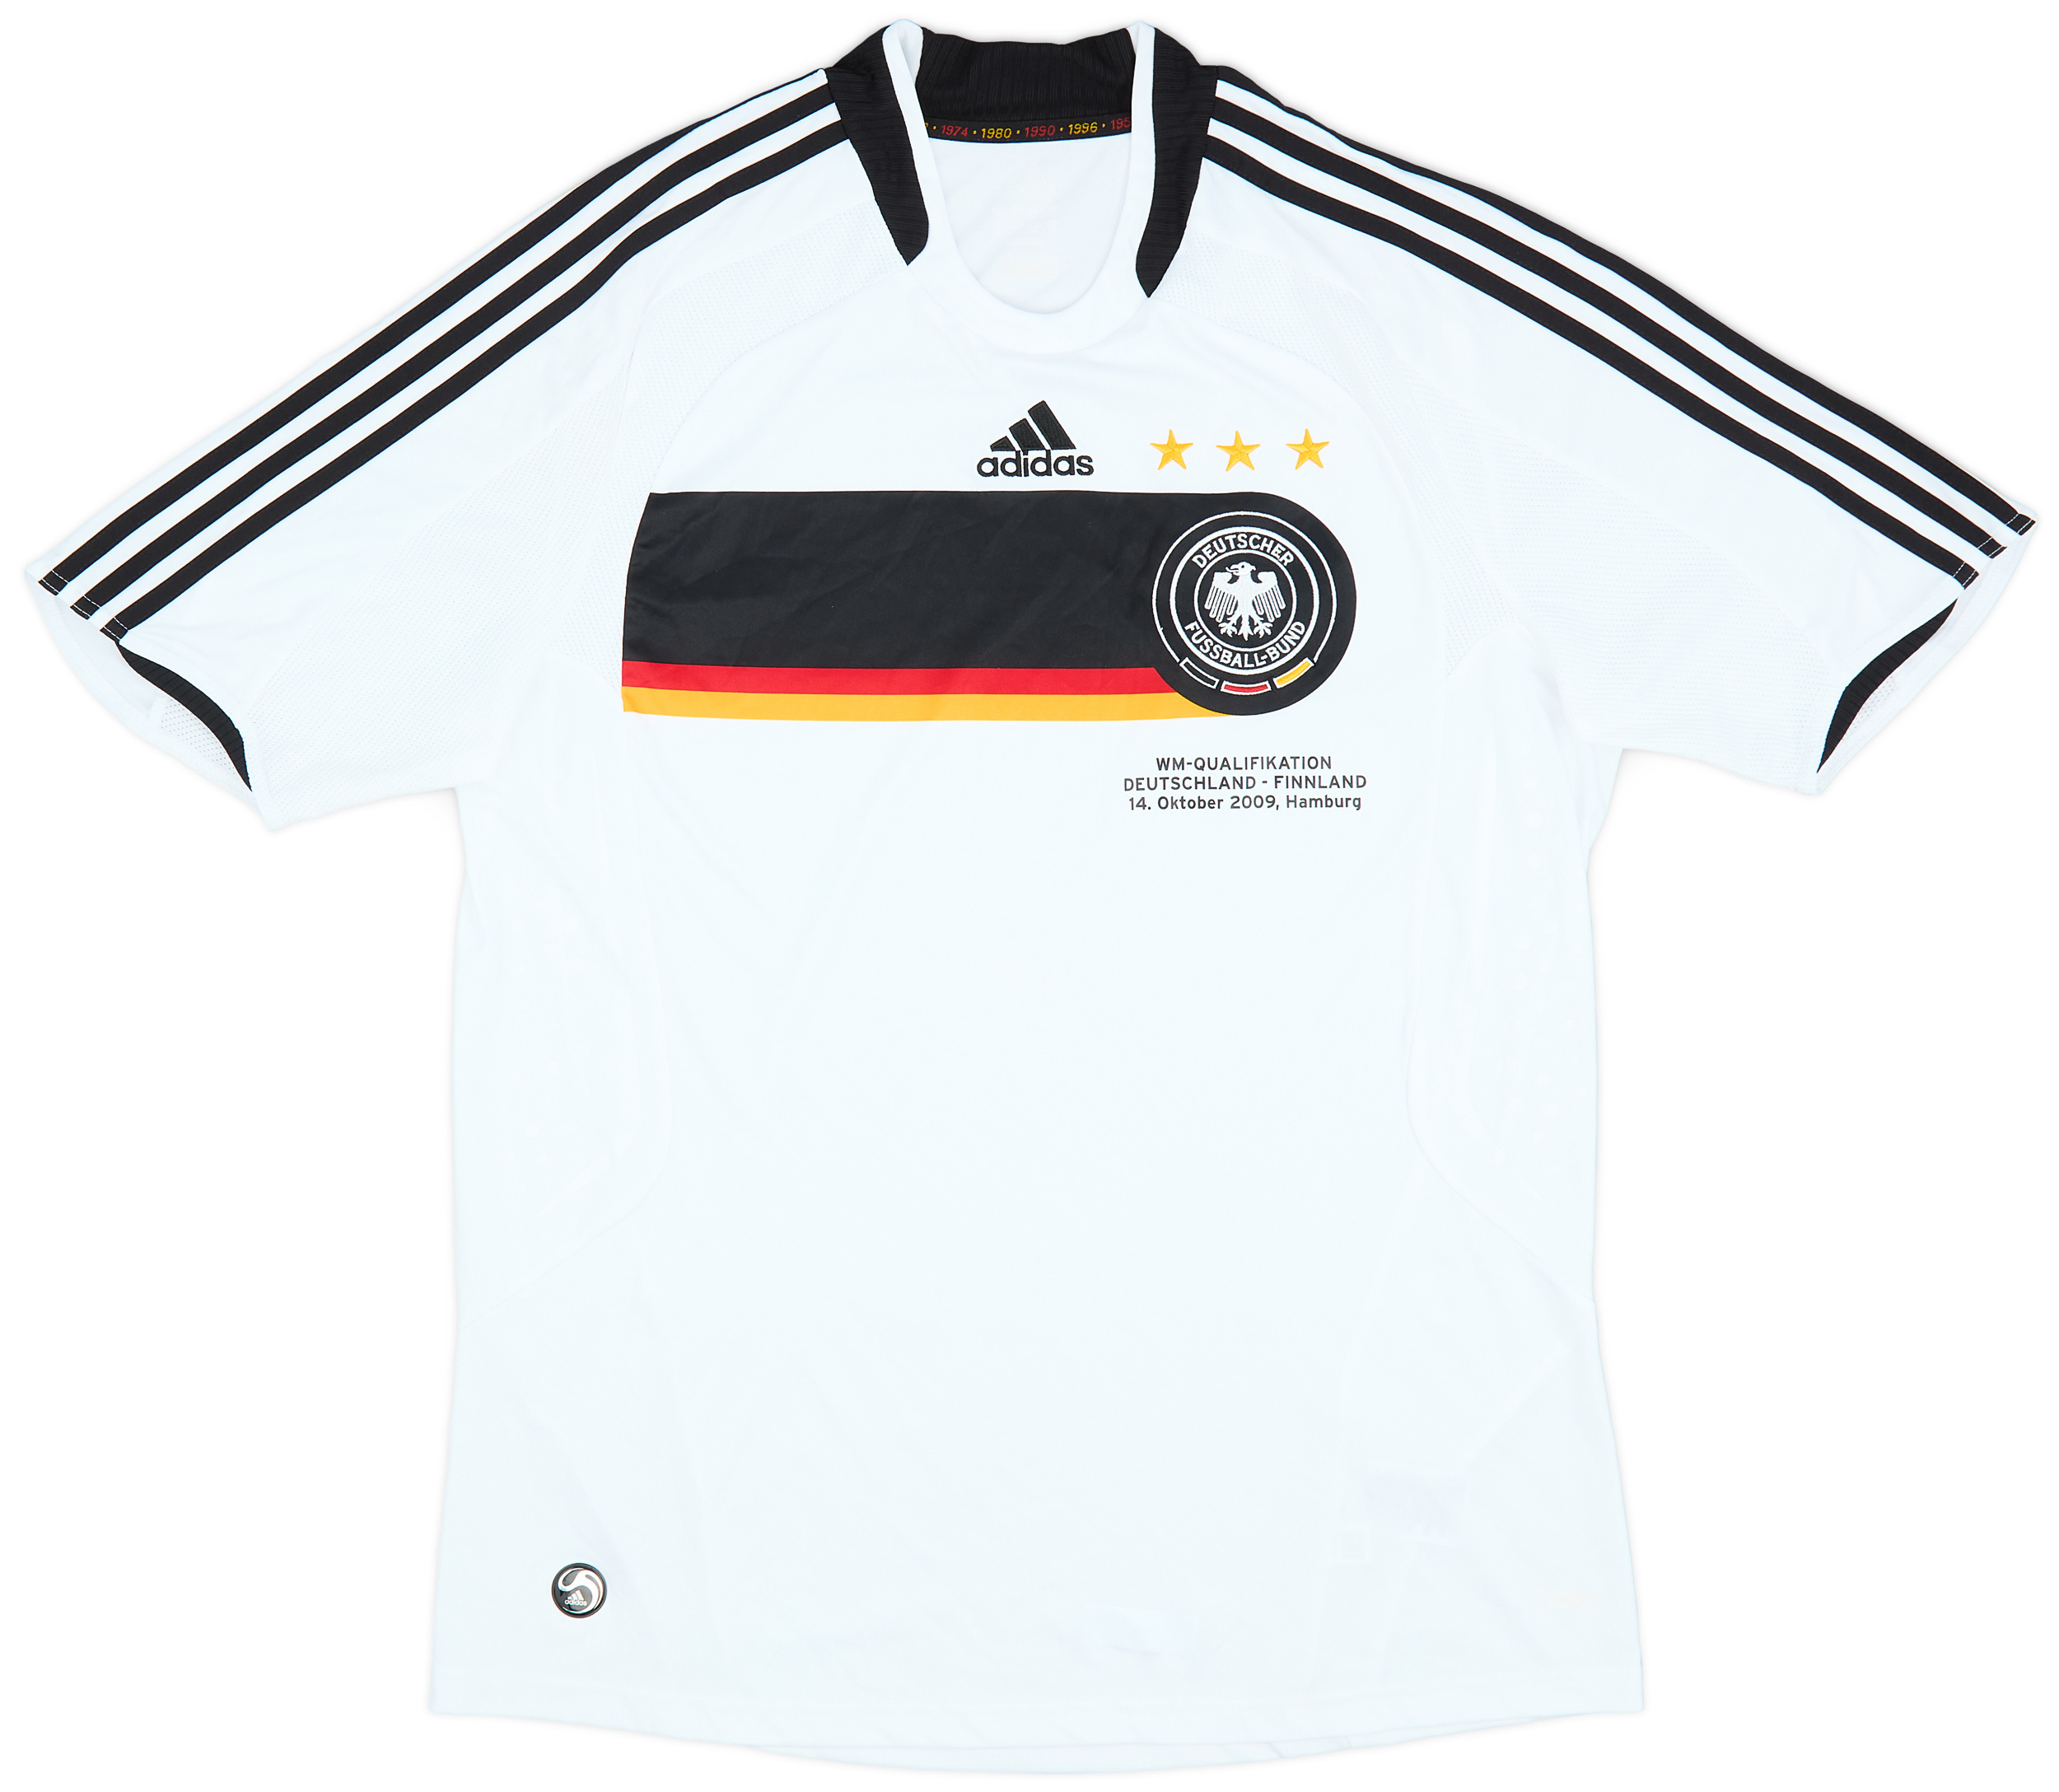 2008-09 Germany 'WM-Qualifikation' Home Shirt - 9/10 - ()